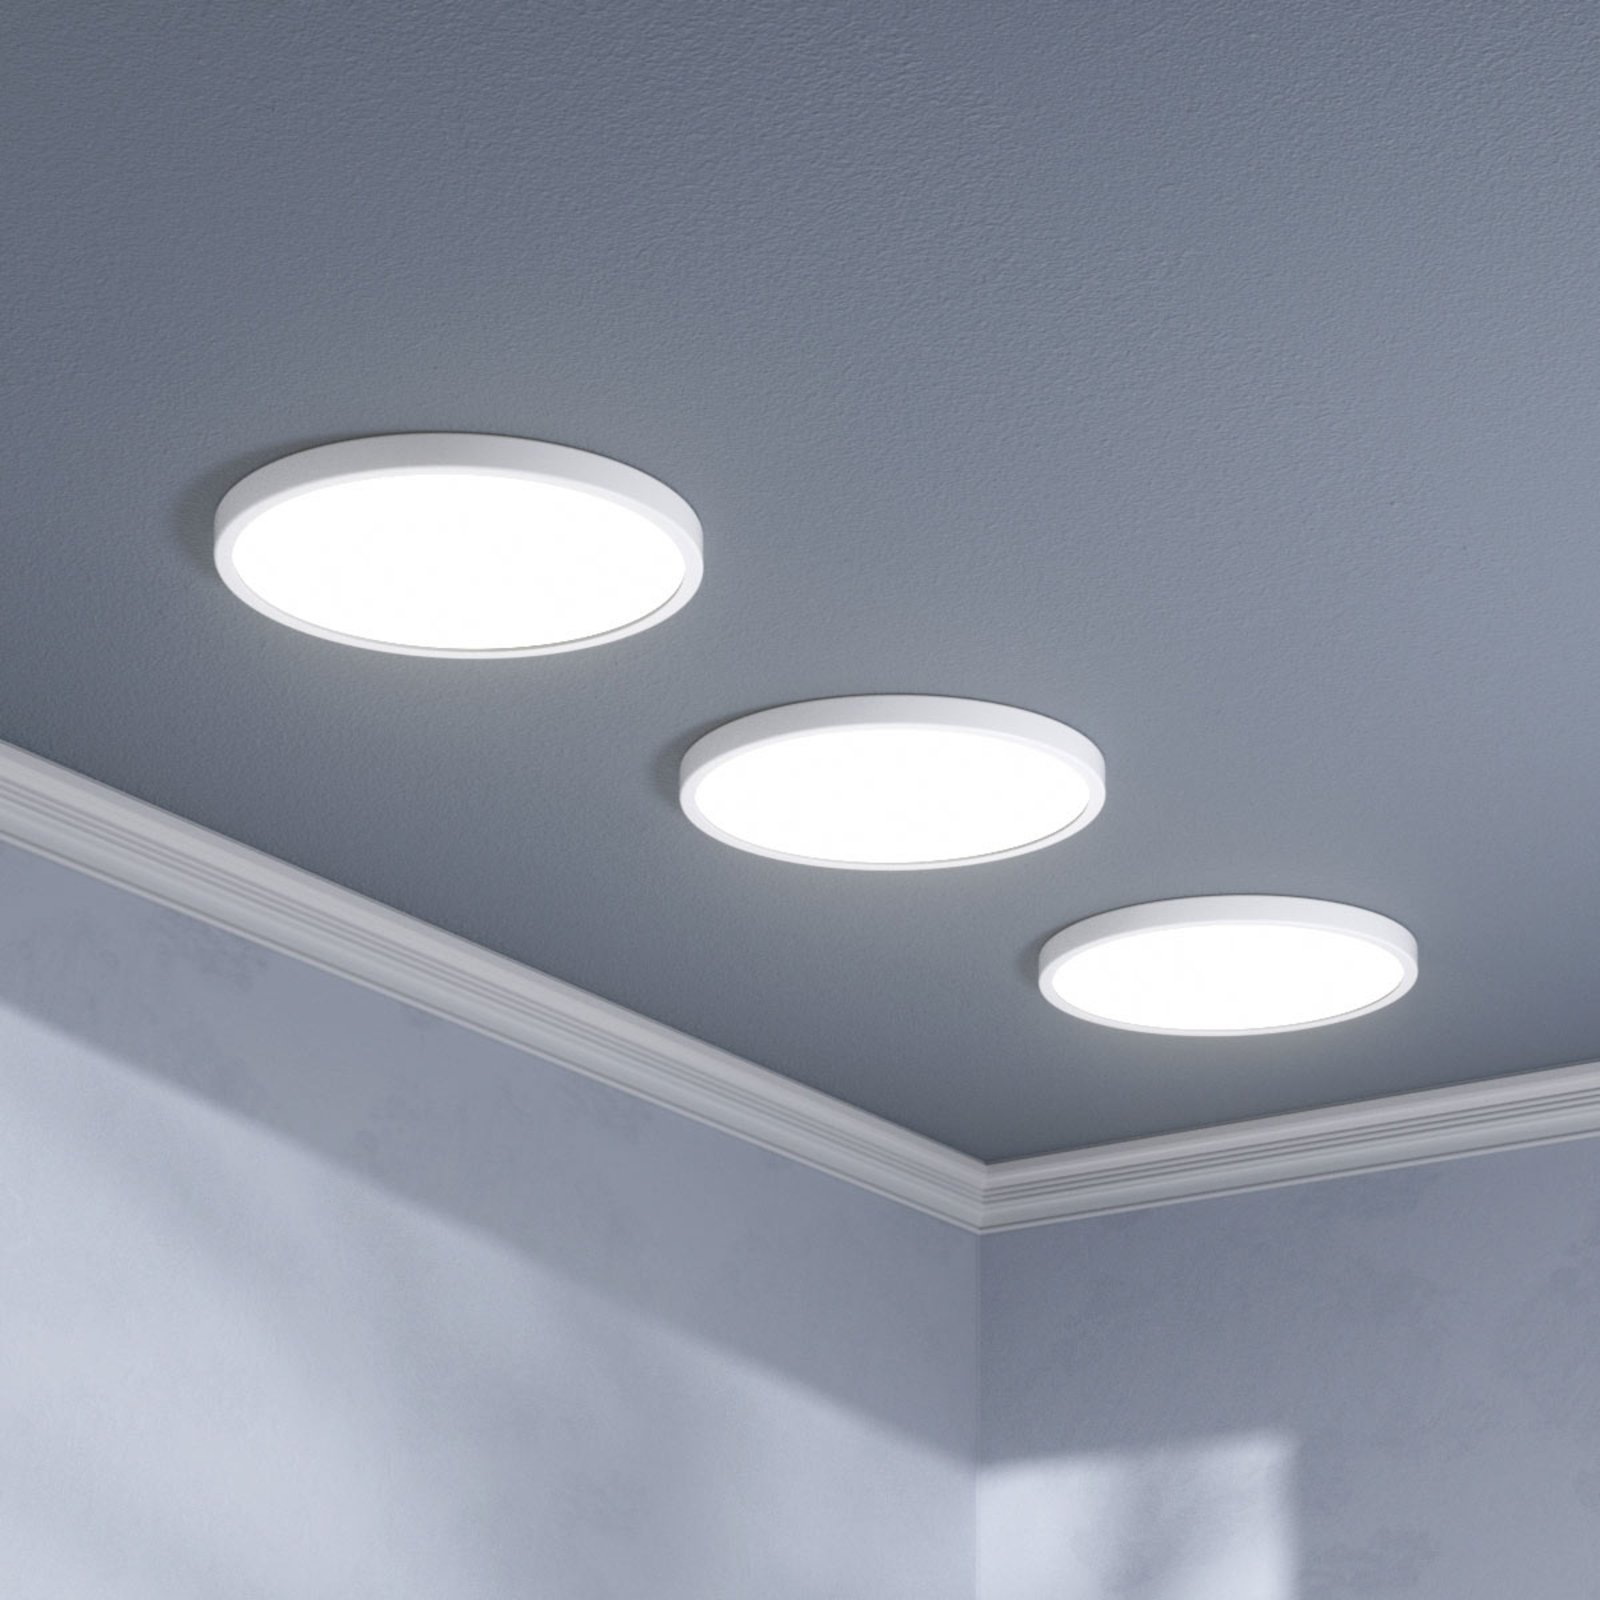 LED Deckenleuchte Solvie Eckig Silber Lampenwelt 30 cm Deckenlampe Küche Flur 